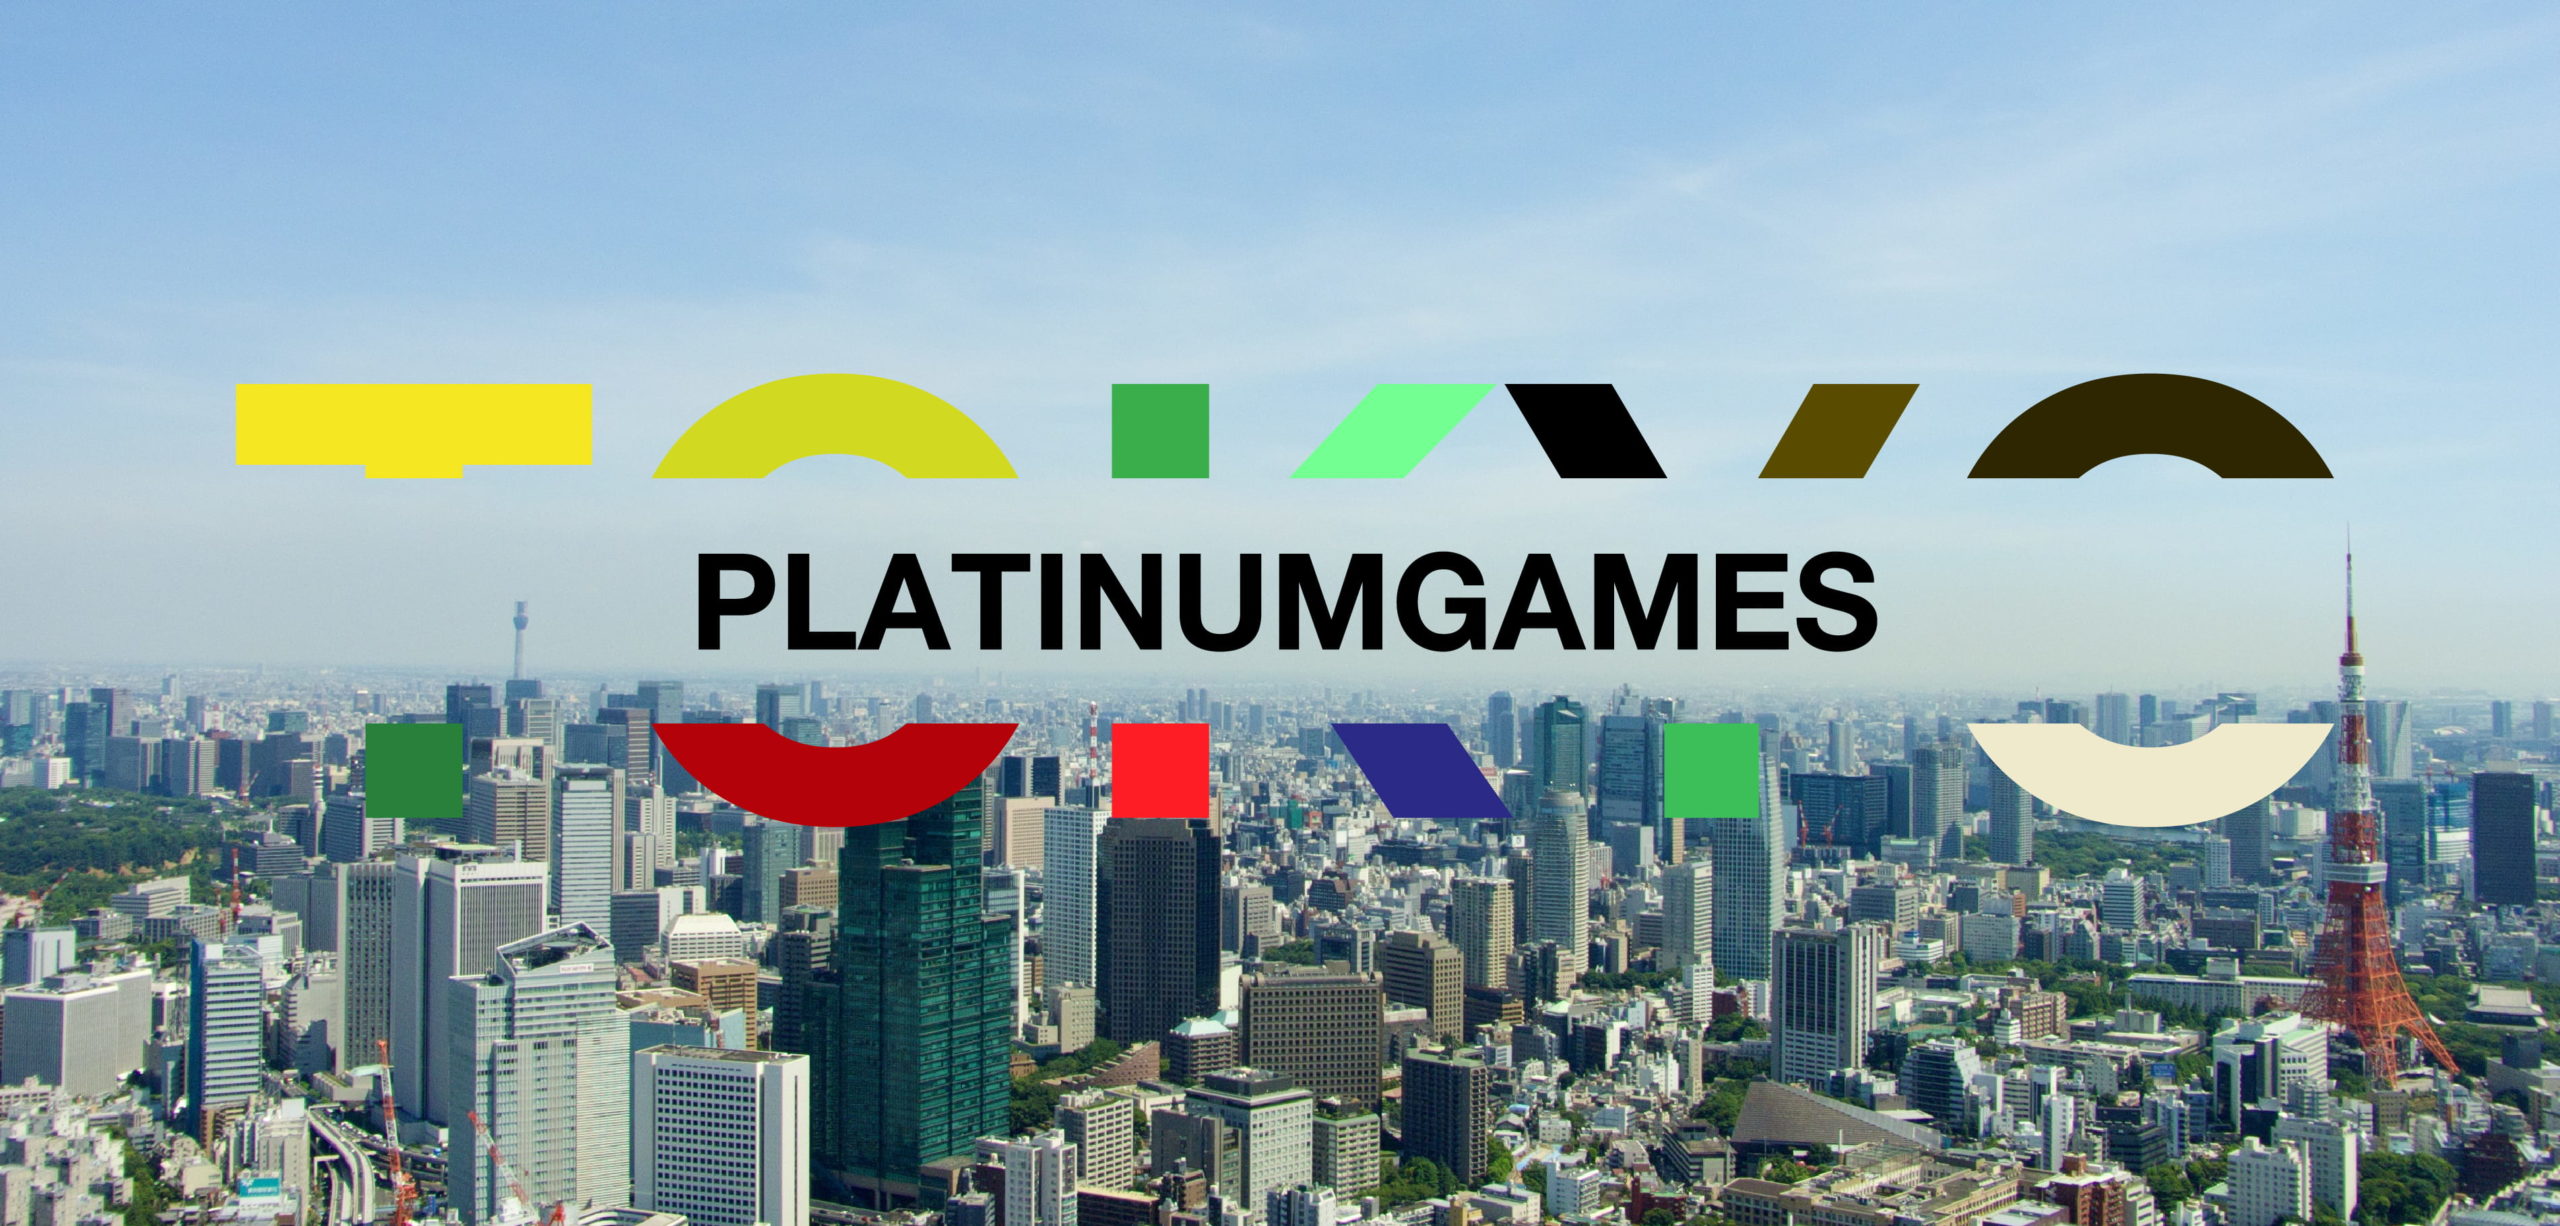 platinumgames-tokyo-2560x1226.jpg